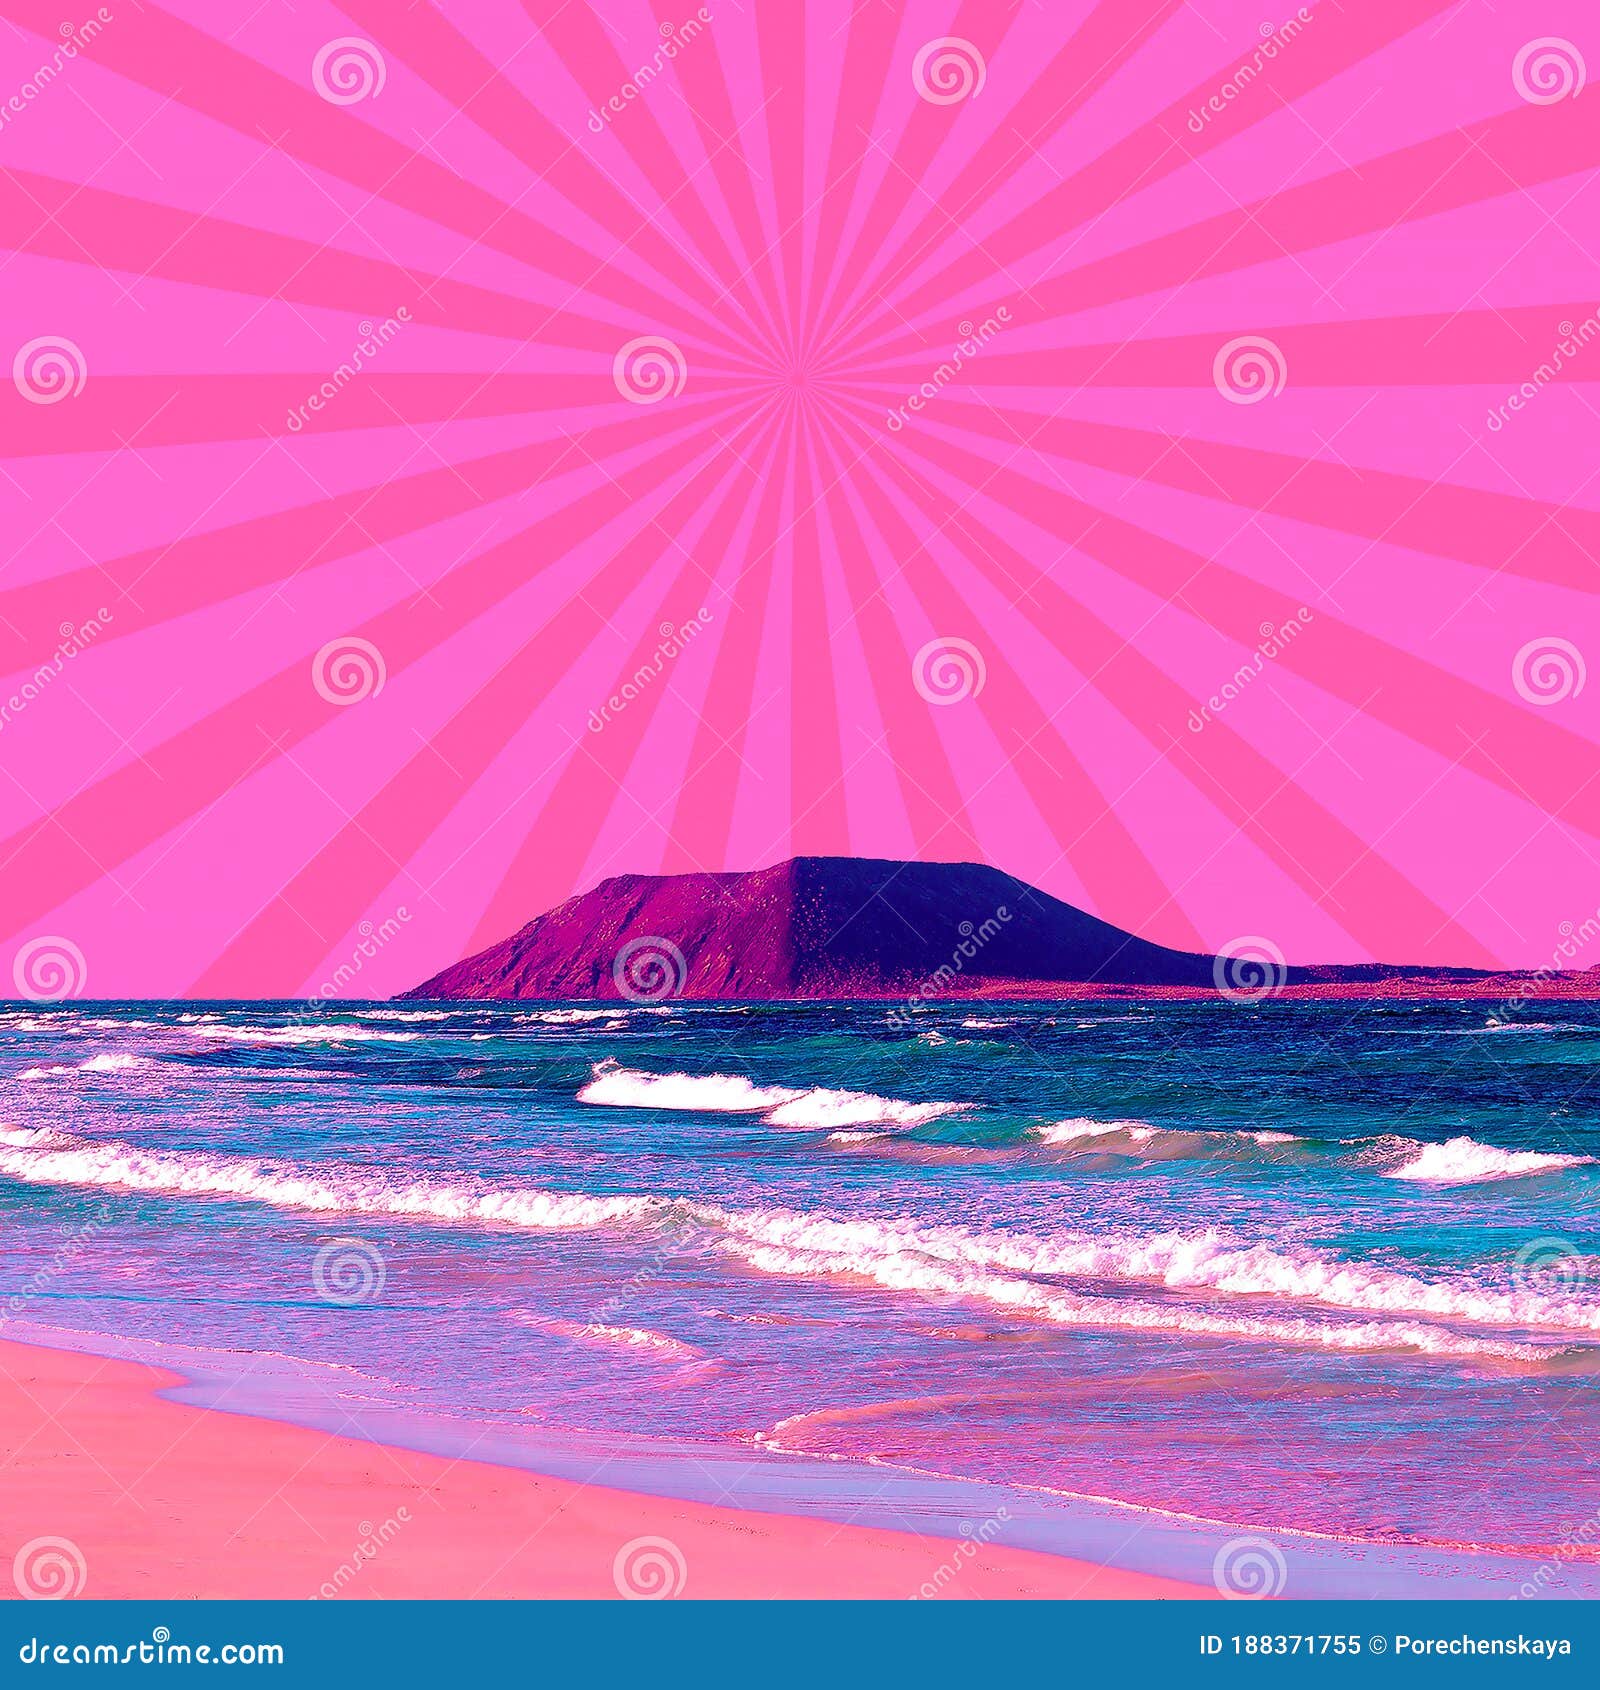 Download Fun Summer Memories Beach Collage Wallpaper  Wallpaperscom